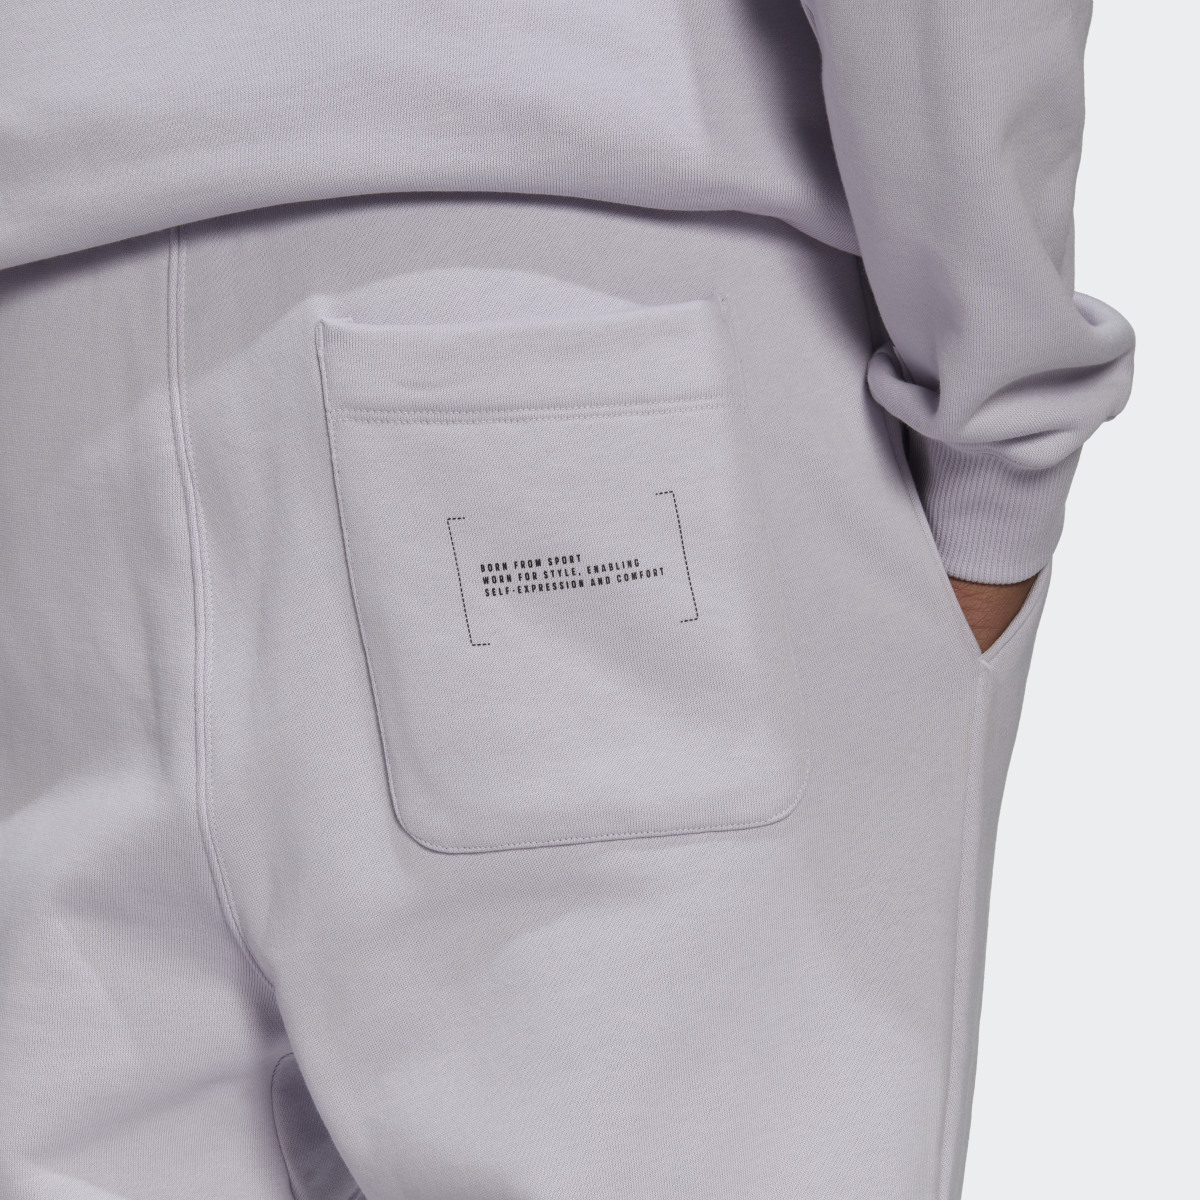 Adidas Pants Fleece. 8